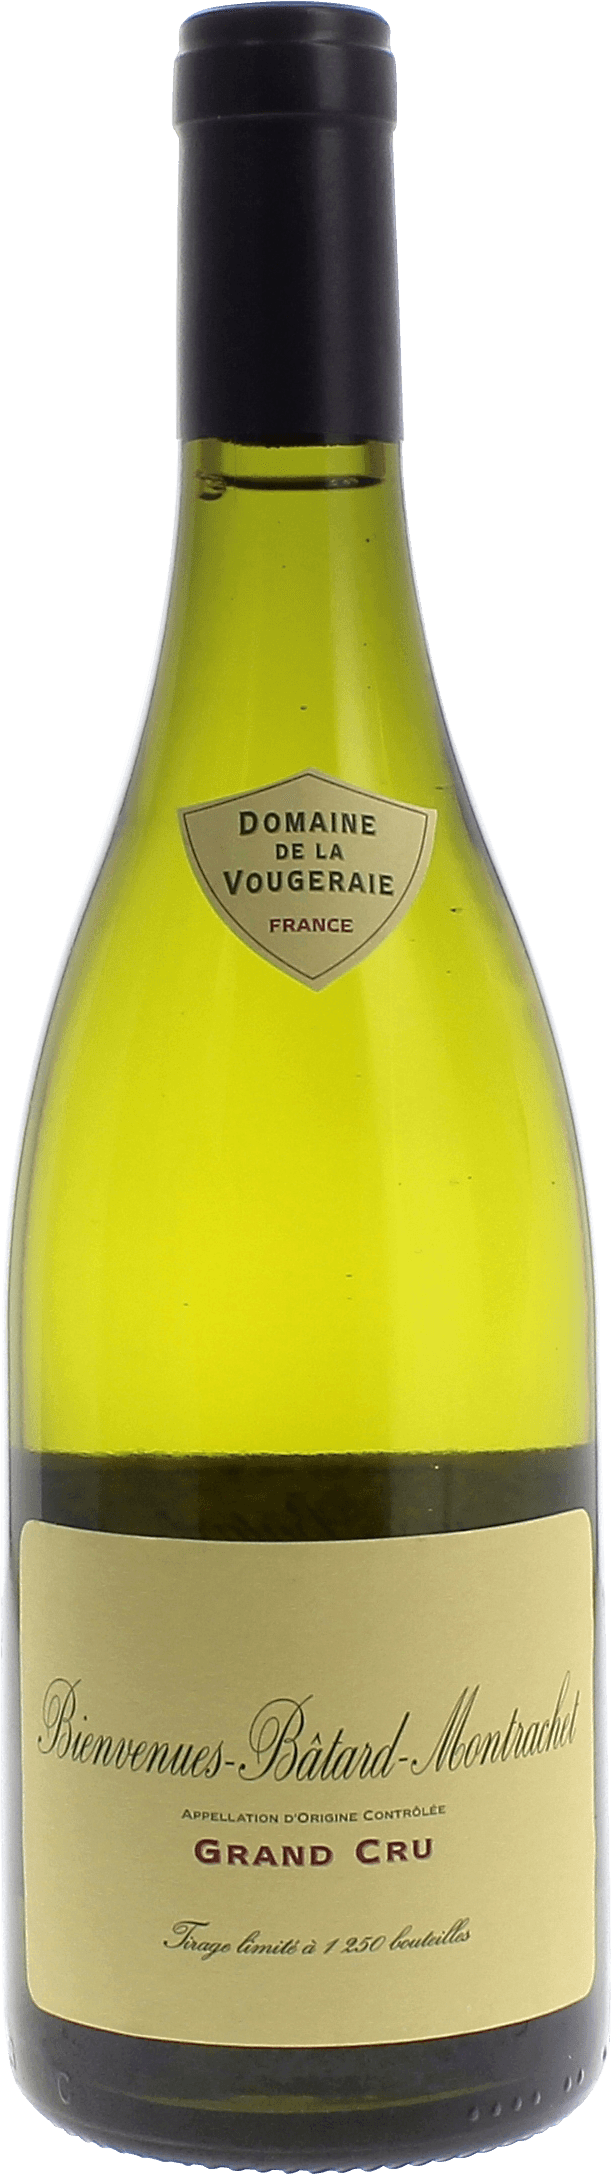 Bienvenues batard montrachet grand cru 2017 Domaine VOUGERAIE, Bourgogne blanc